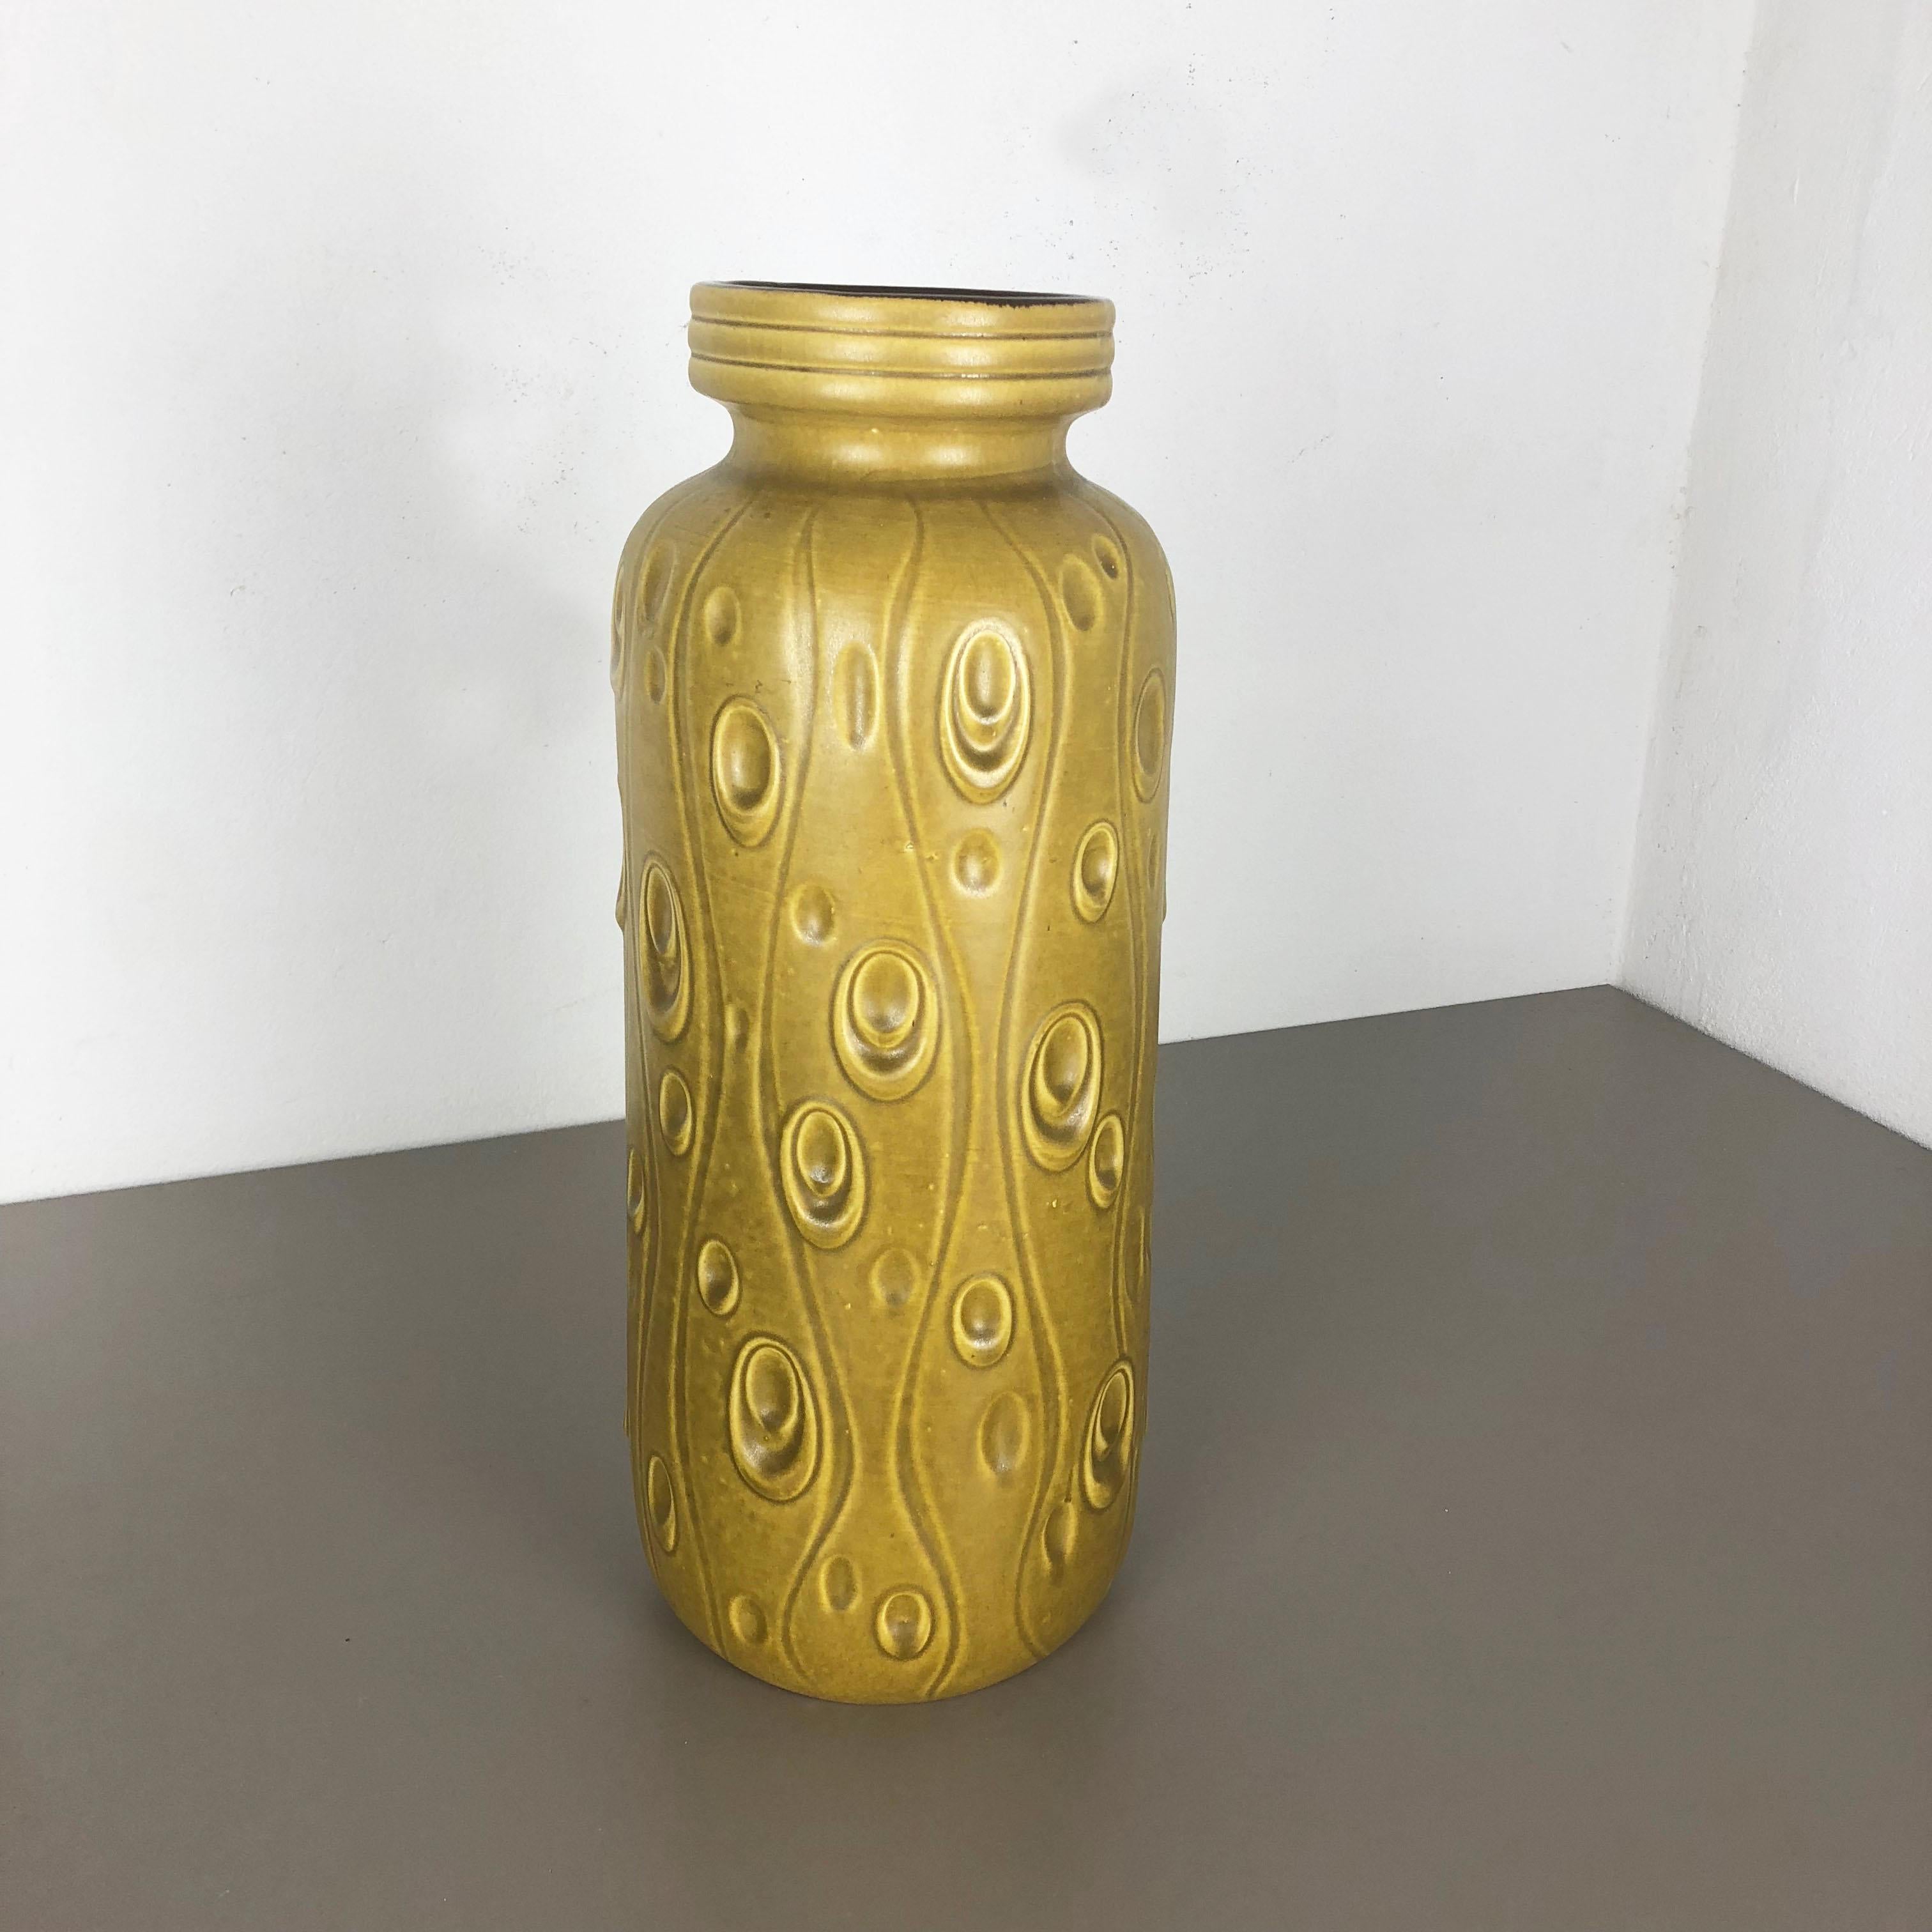 Artikel:

Fat Lava Art Vase extra große Version


Modell: 288-51


Produzent:

Scheurich, Deutschland



Jahrzehnt:

1970s




Diese originelle Vintage-Vase wurde in den 1970er Jahren in Deutschland hergestellt. Sie ist aus